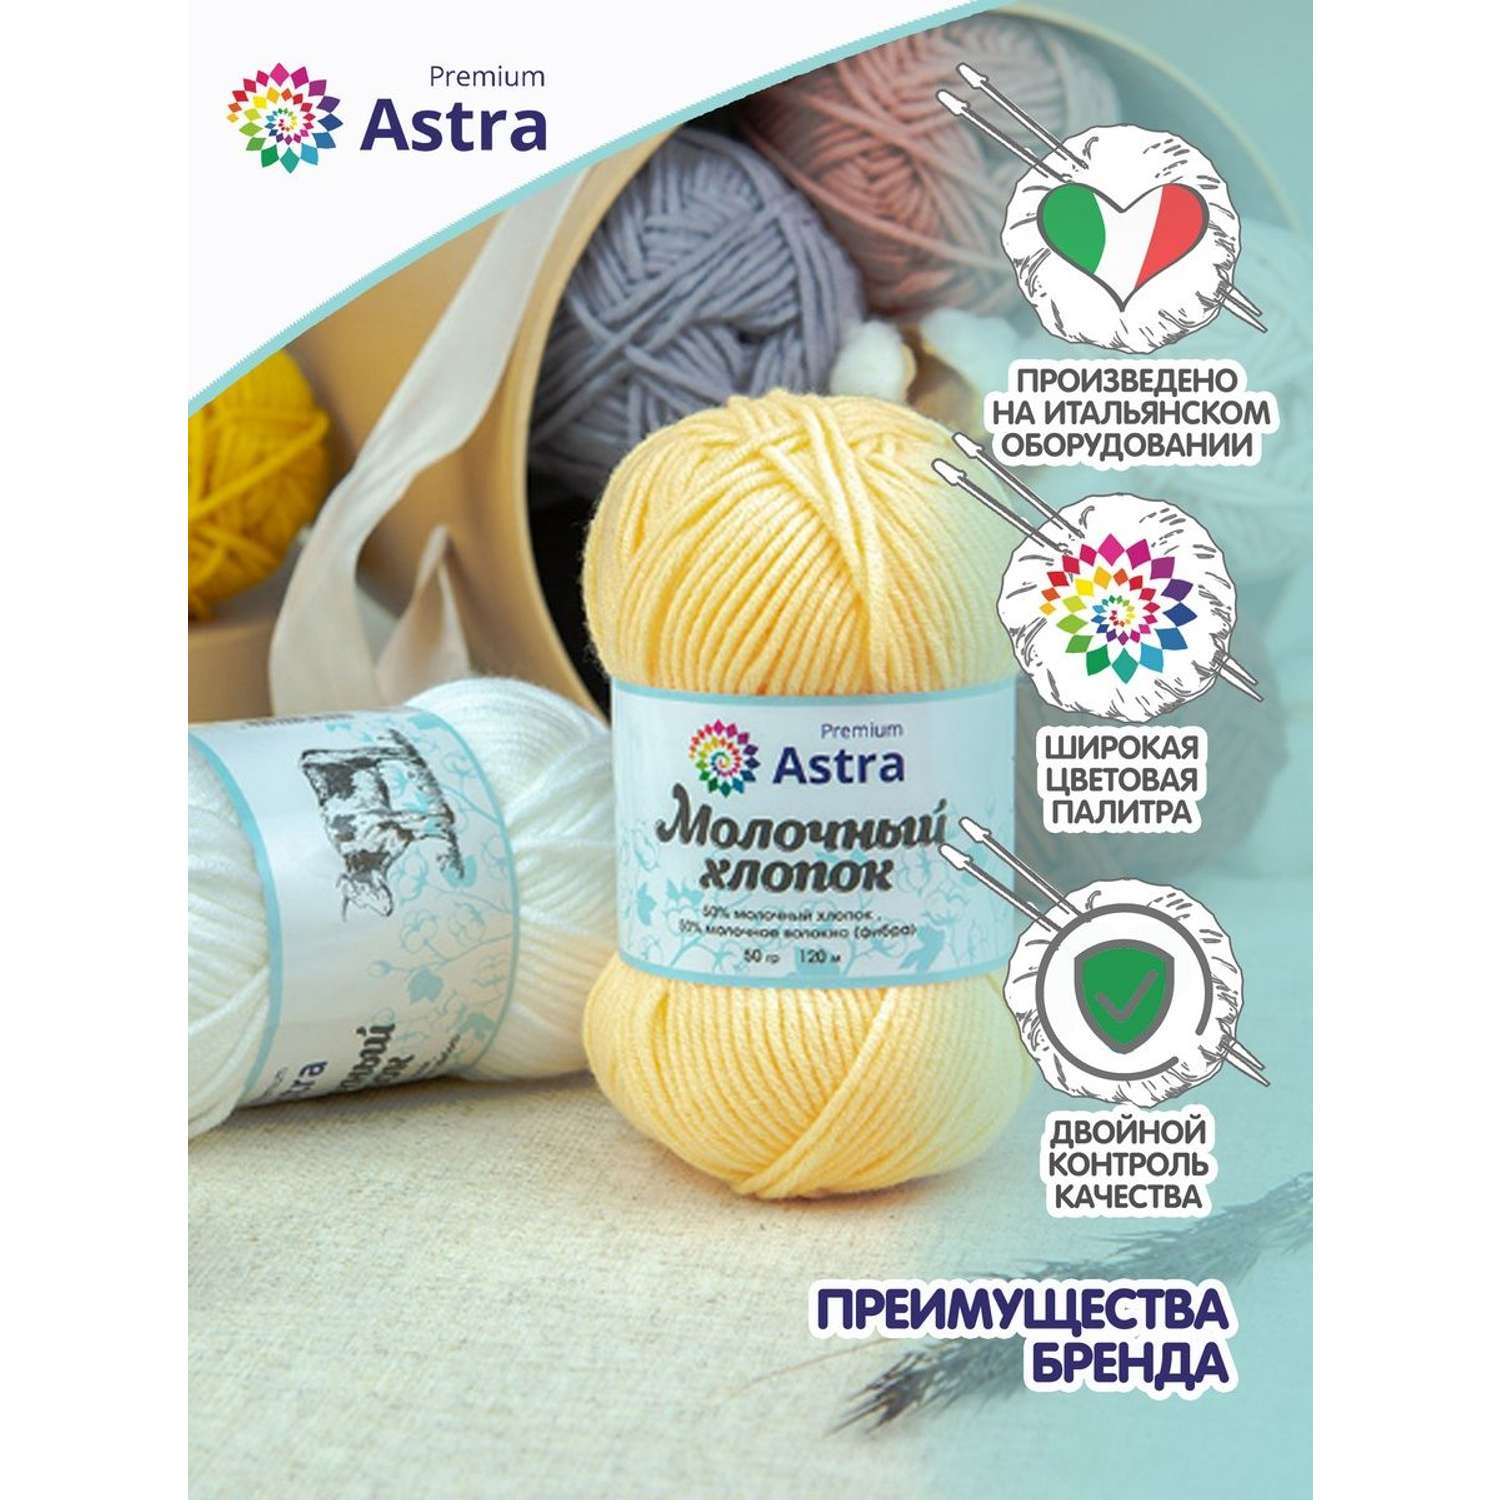 Пряжа для вязания Astra Premium milk cotton хлопок акрил 50 гр 100 м 23 ванильный крем 3 мотка - фото 3